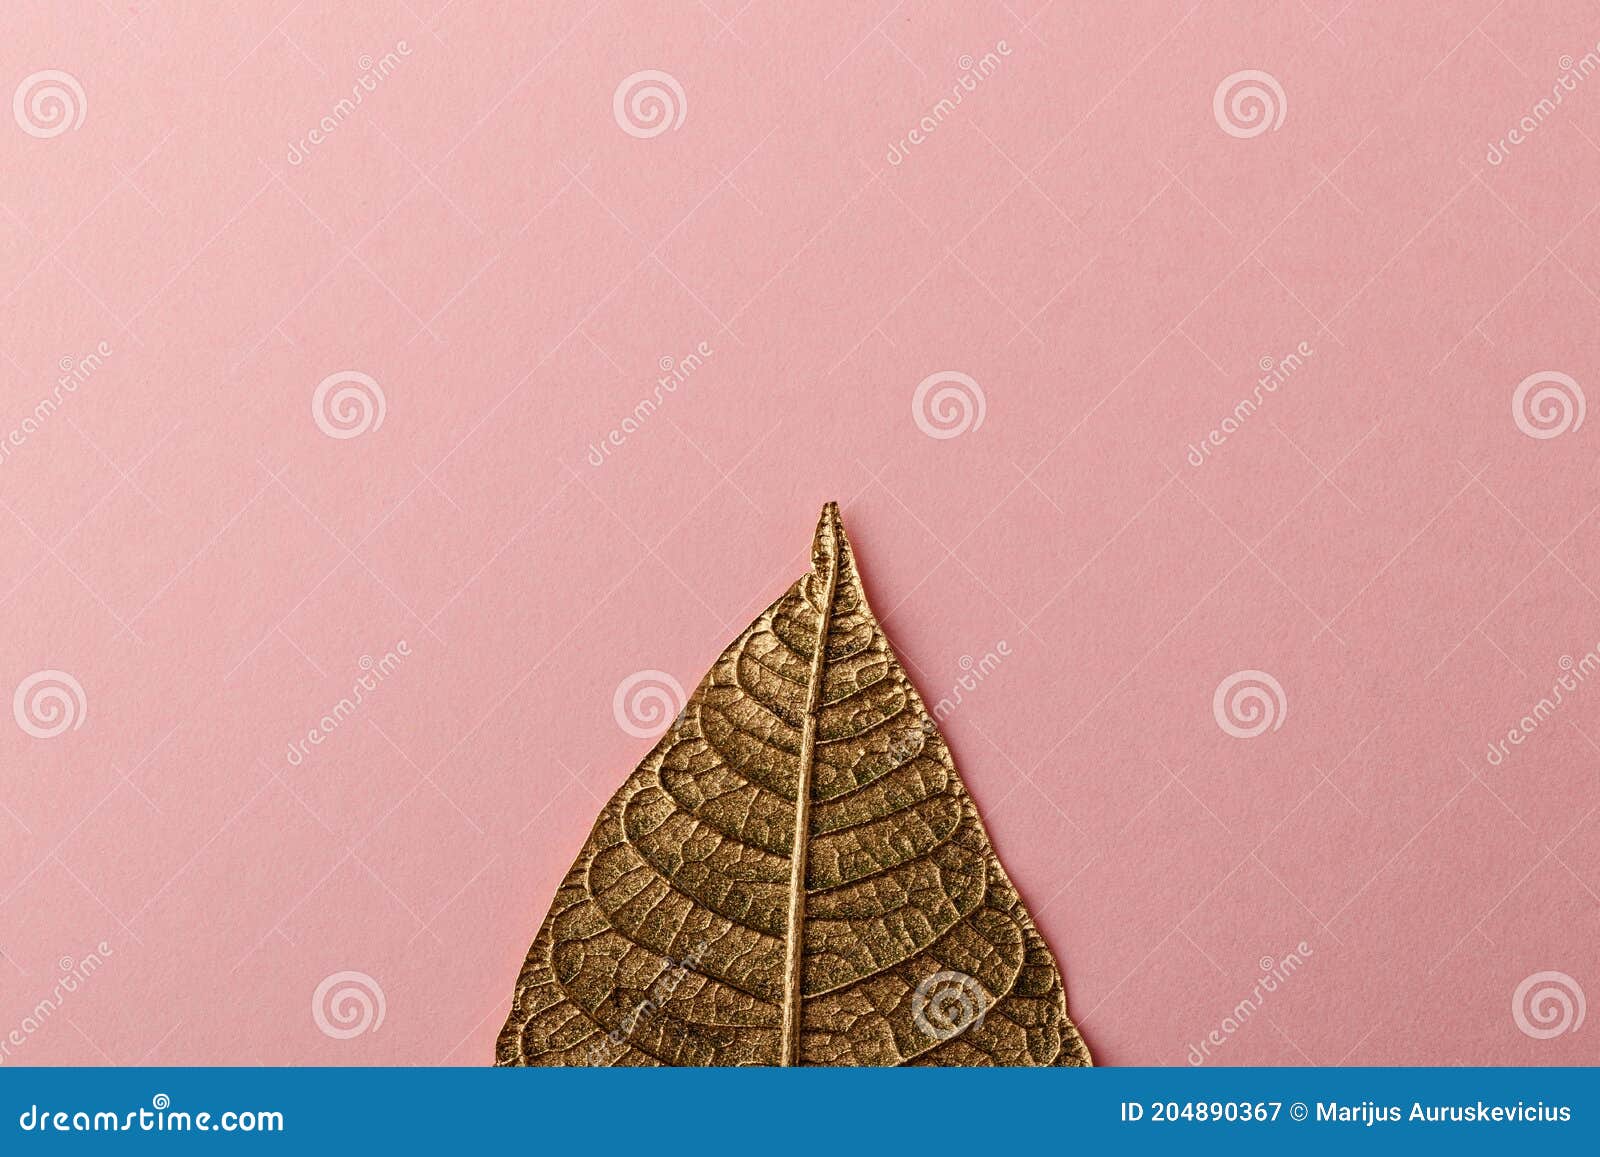 Folha De Flor De Natal Dourada. Poinsettia Imagem de Stock - Imagem de  decorativo, mola: 204890367